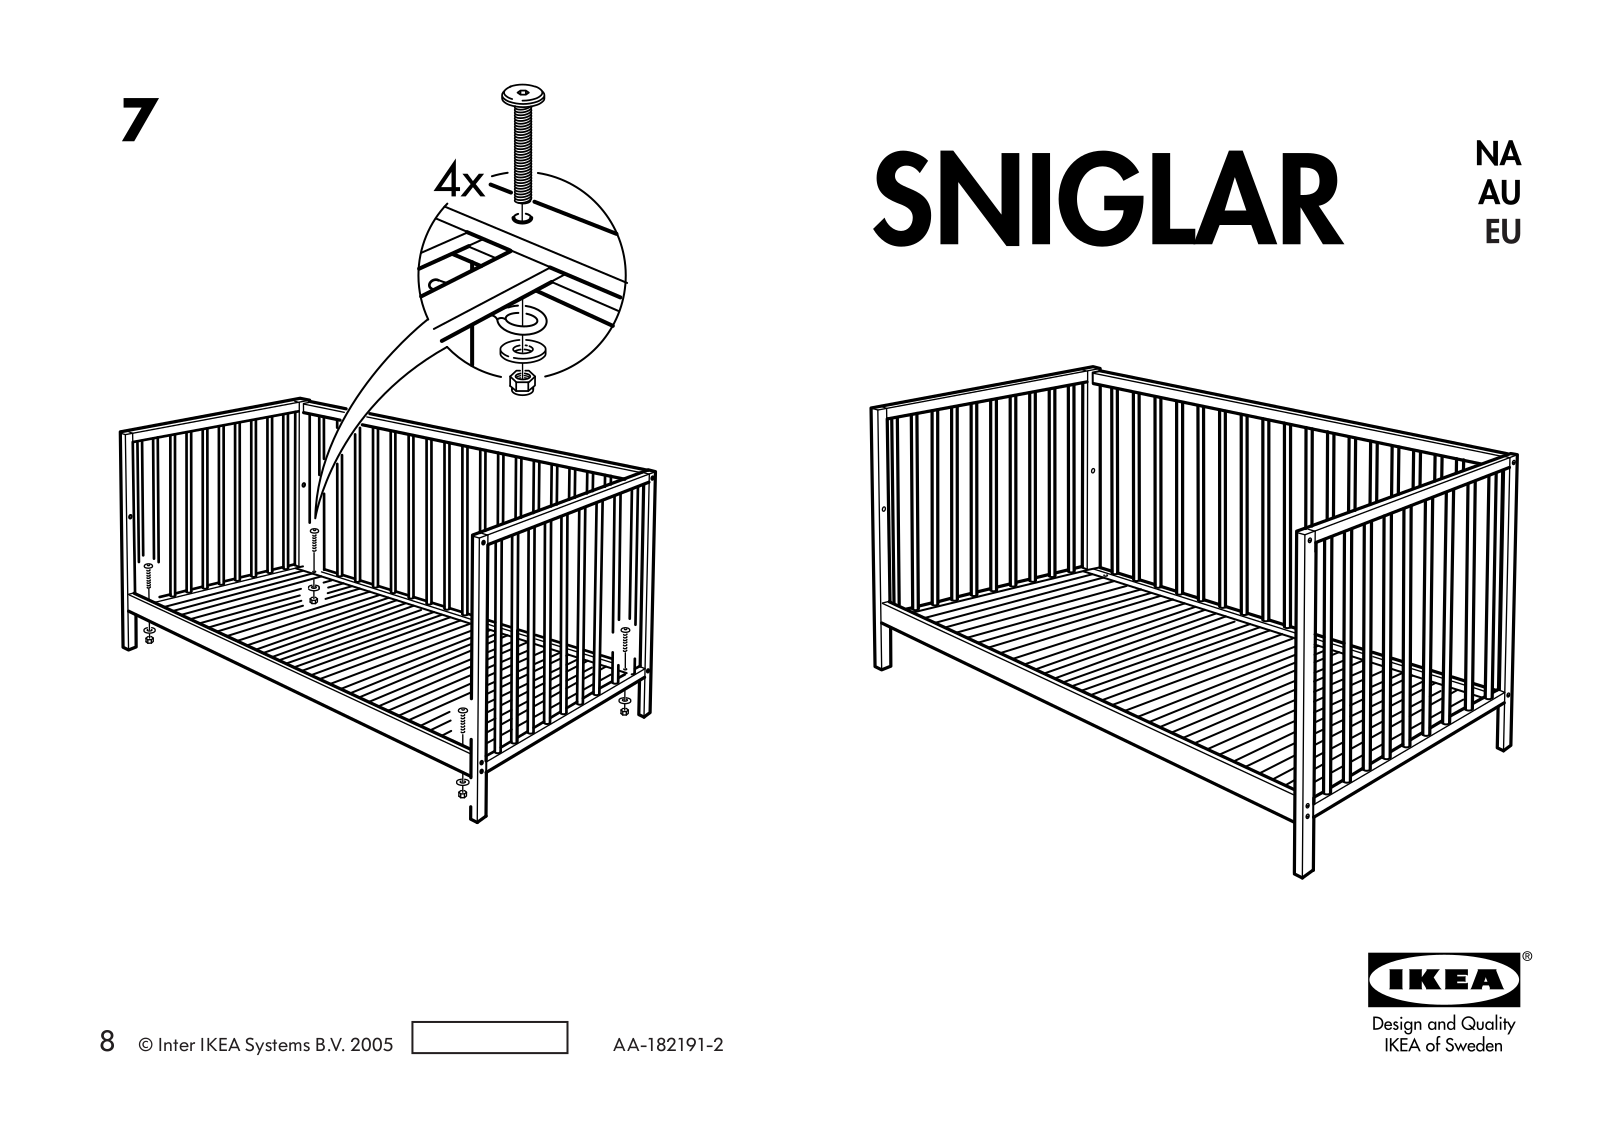 IKEA SNIGLAR CRIB User Manual